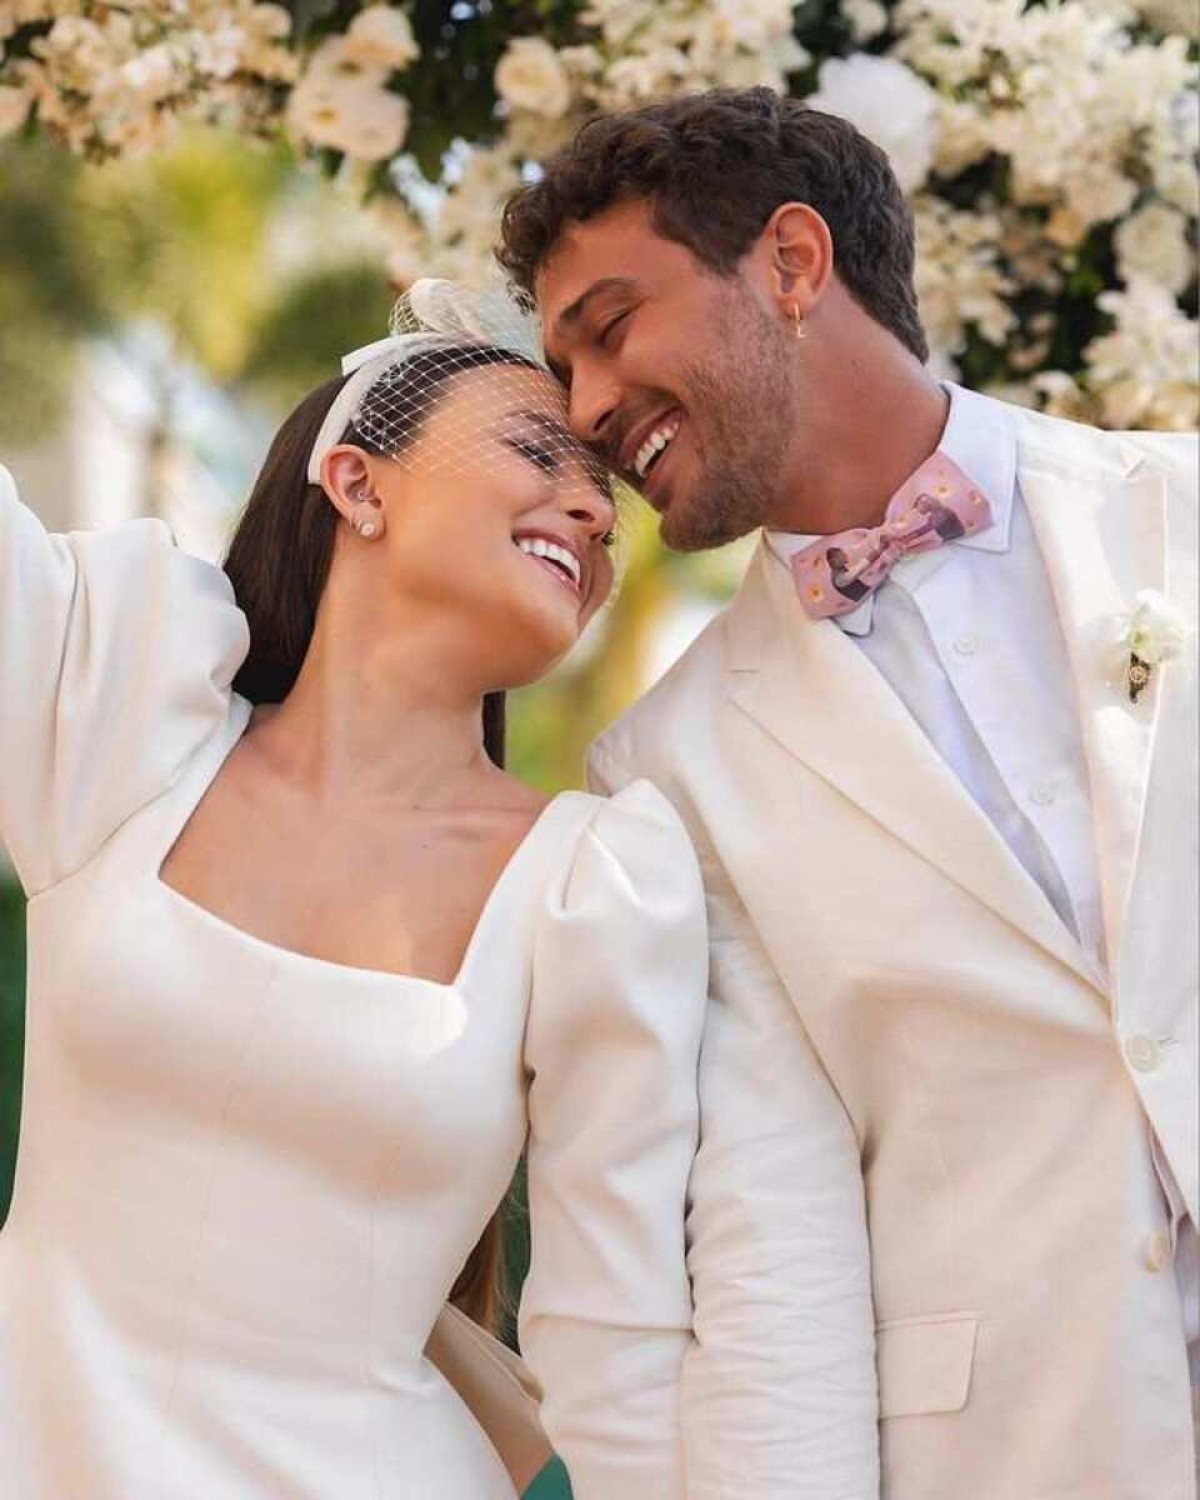 Casamento de Larissa Manoela e André Frambach